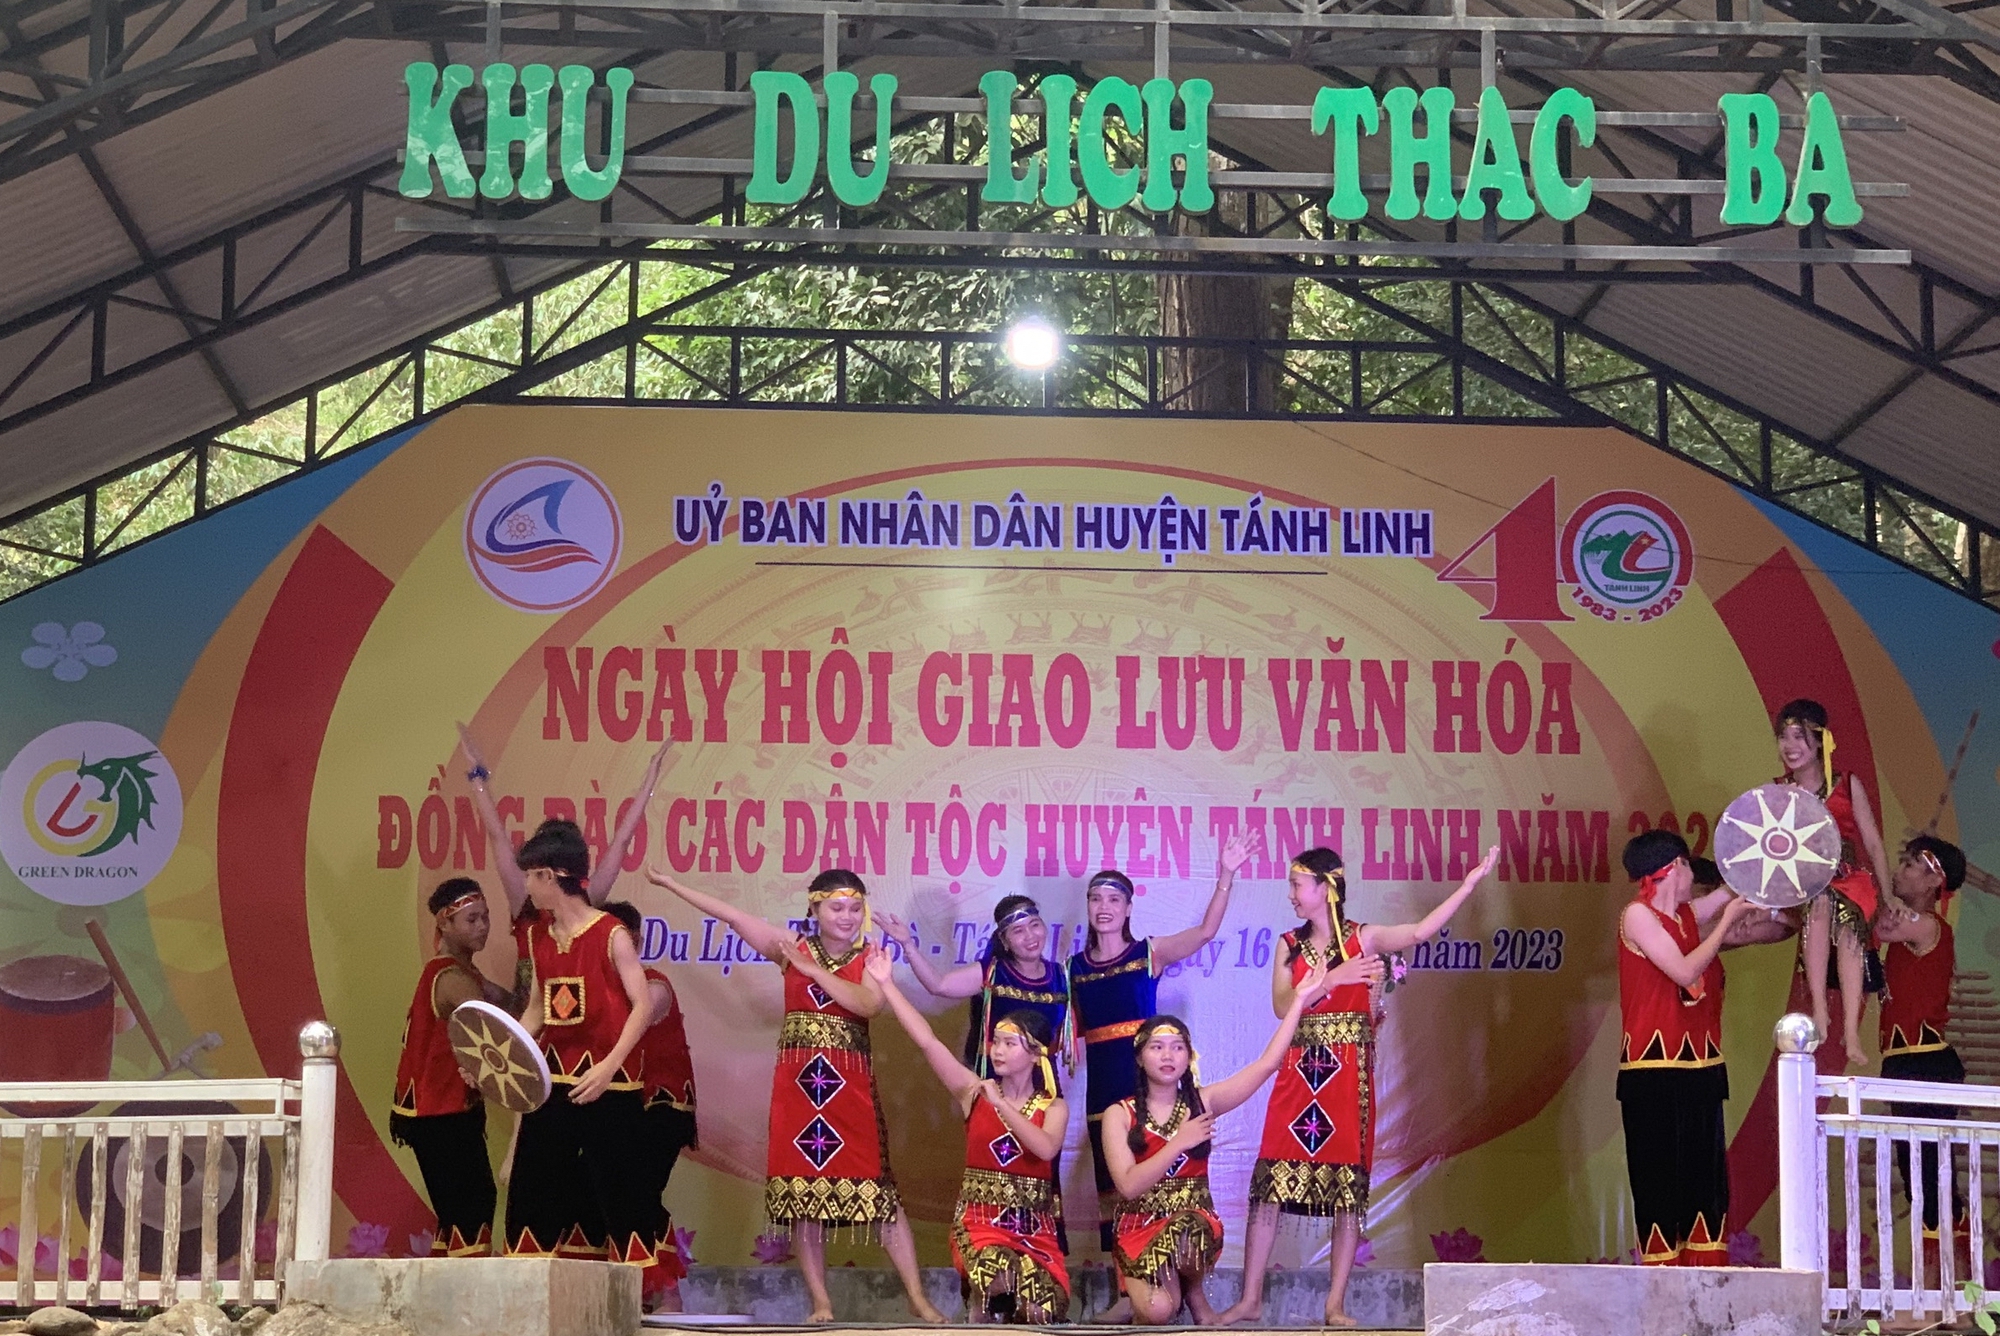 Ngày hội sắc màu và những điệu múa của đồng bào dân tộc ở Bình Thuận - Ảnh 1.